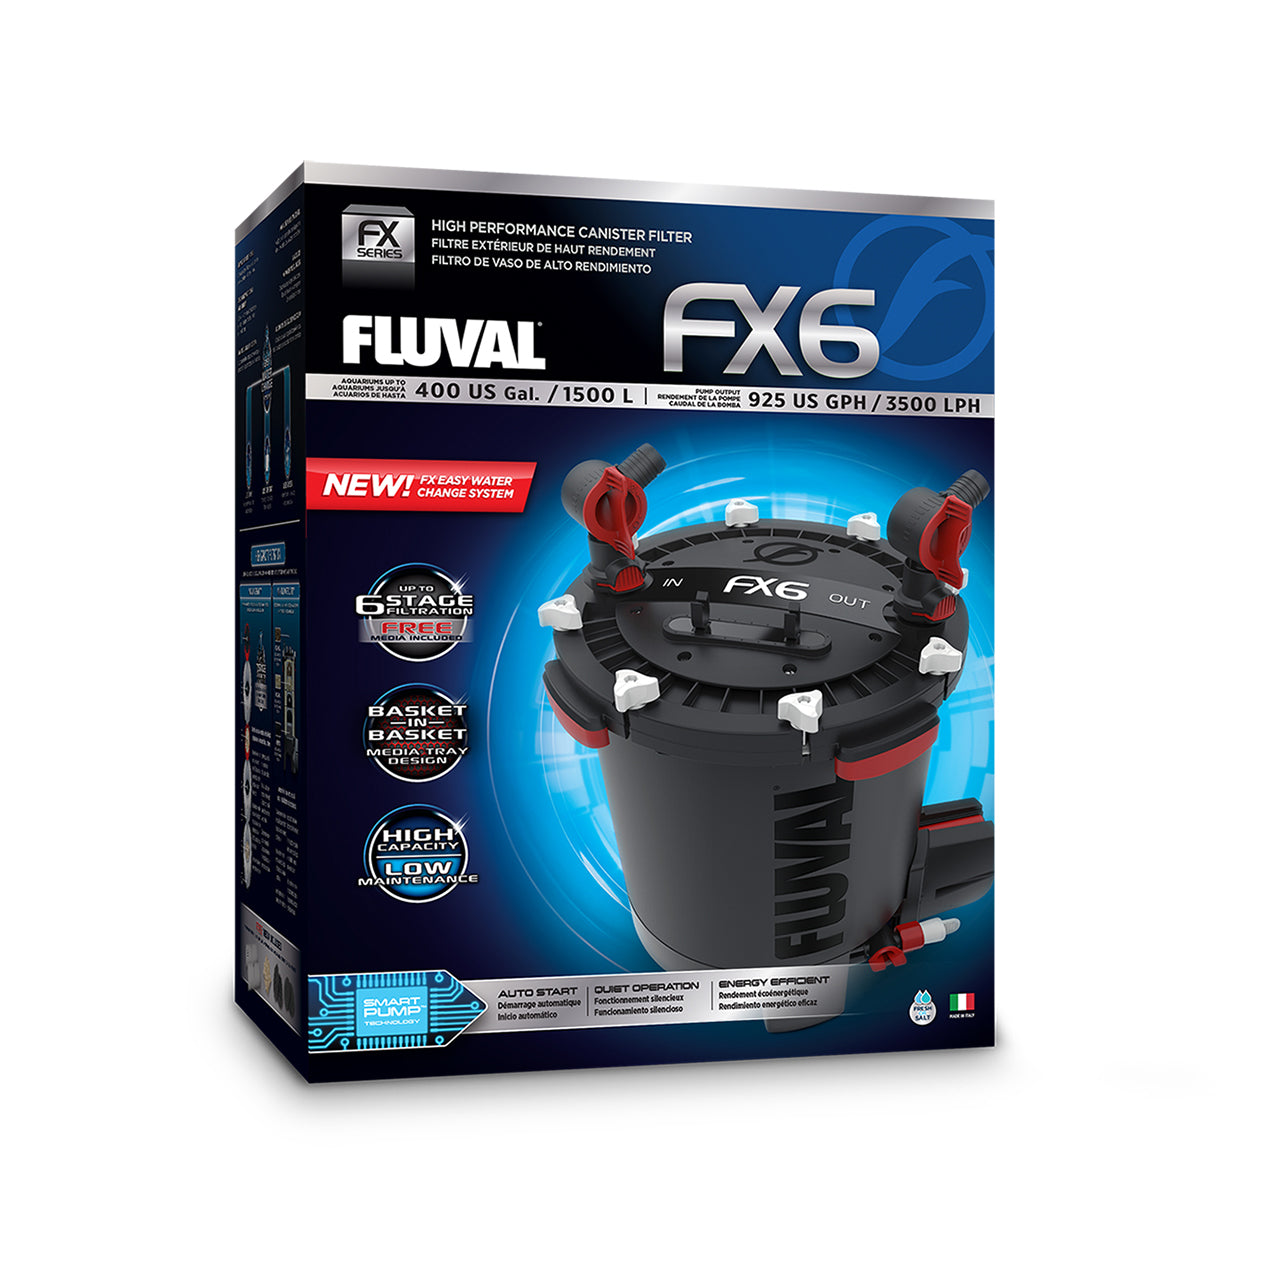 Fluval FX4 High Performance Canister Filter For Sale | Fluval FX6 For Sale | FX4 Canister Filter For Sale |